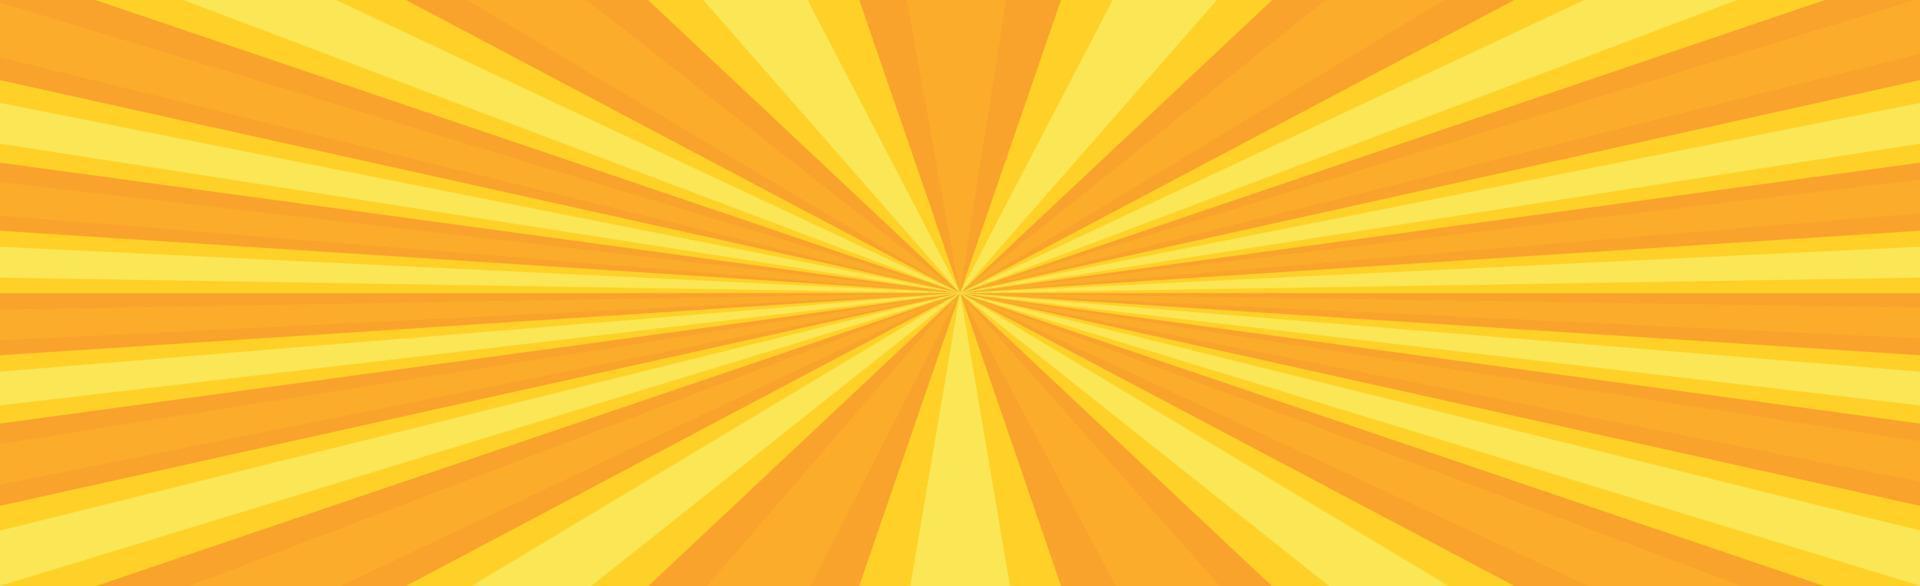 raios solares amarelos radiais, fundo de textura padrão panorâmico brilhante - vetor